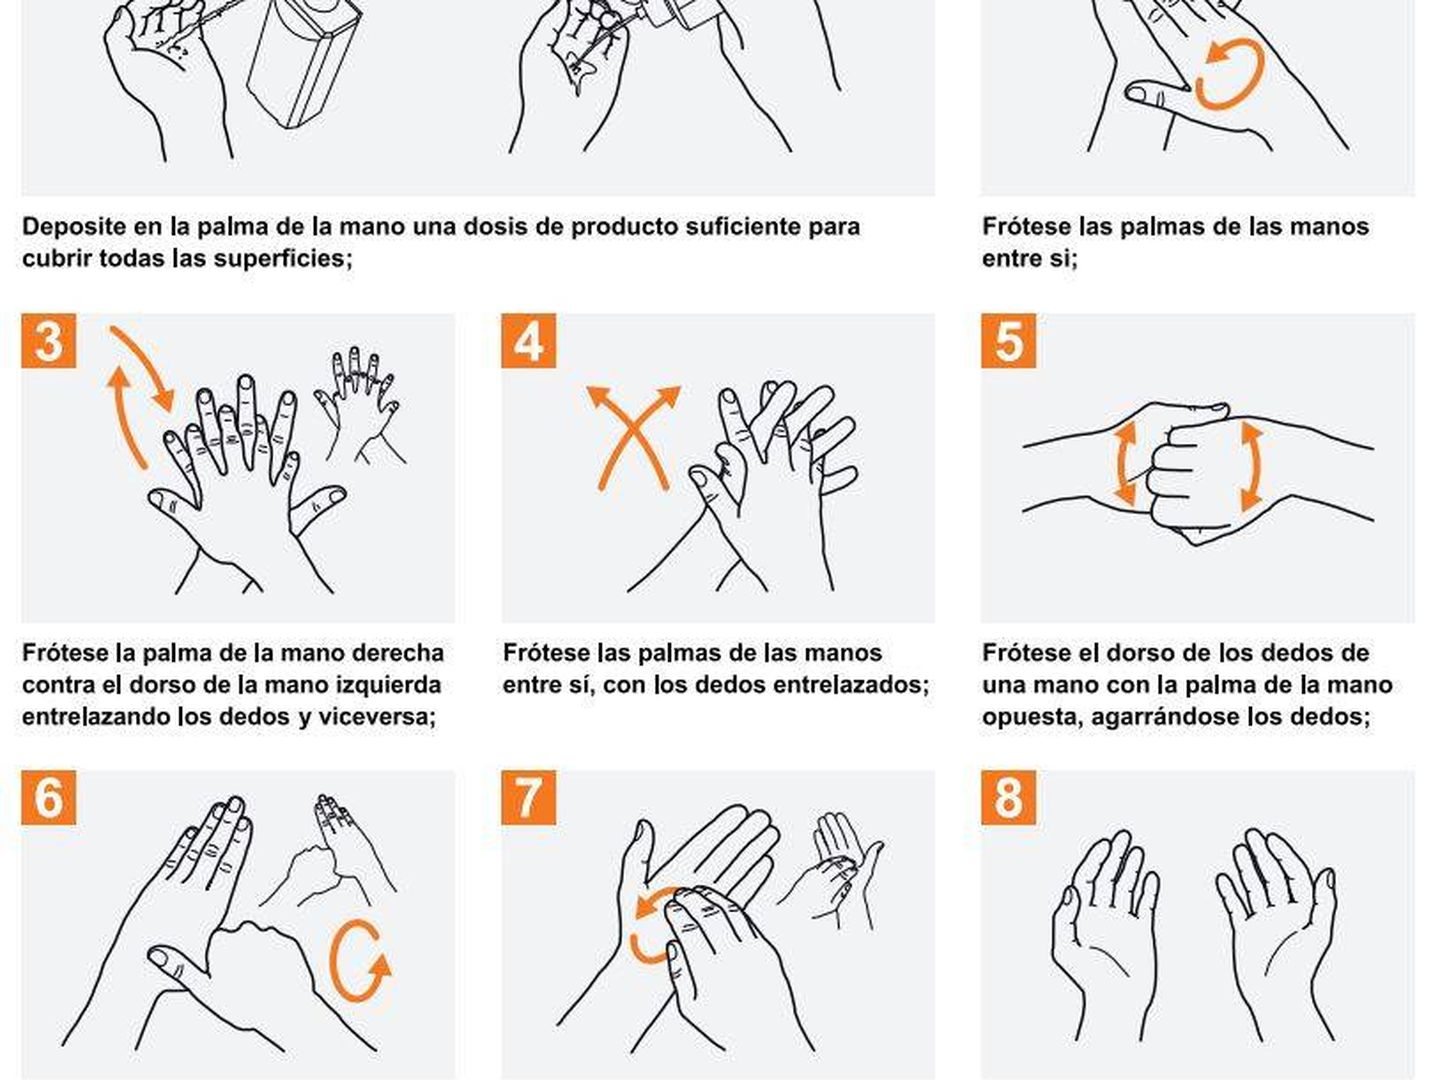 ¿Cómo desfinfectar correctamente las manos? (OMS)